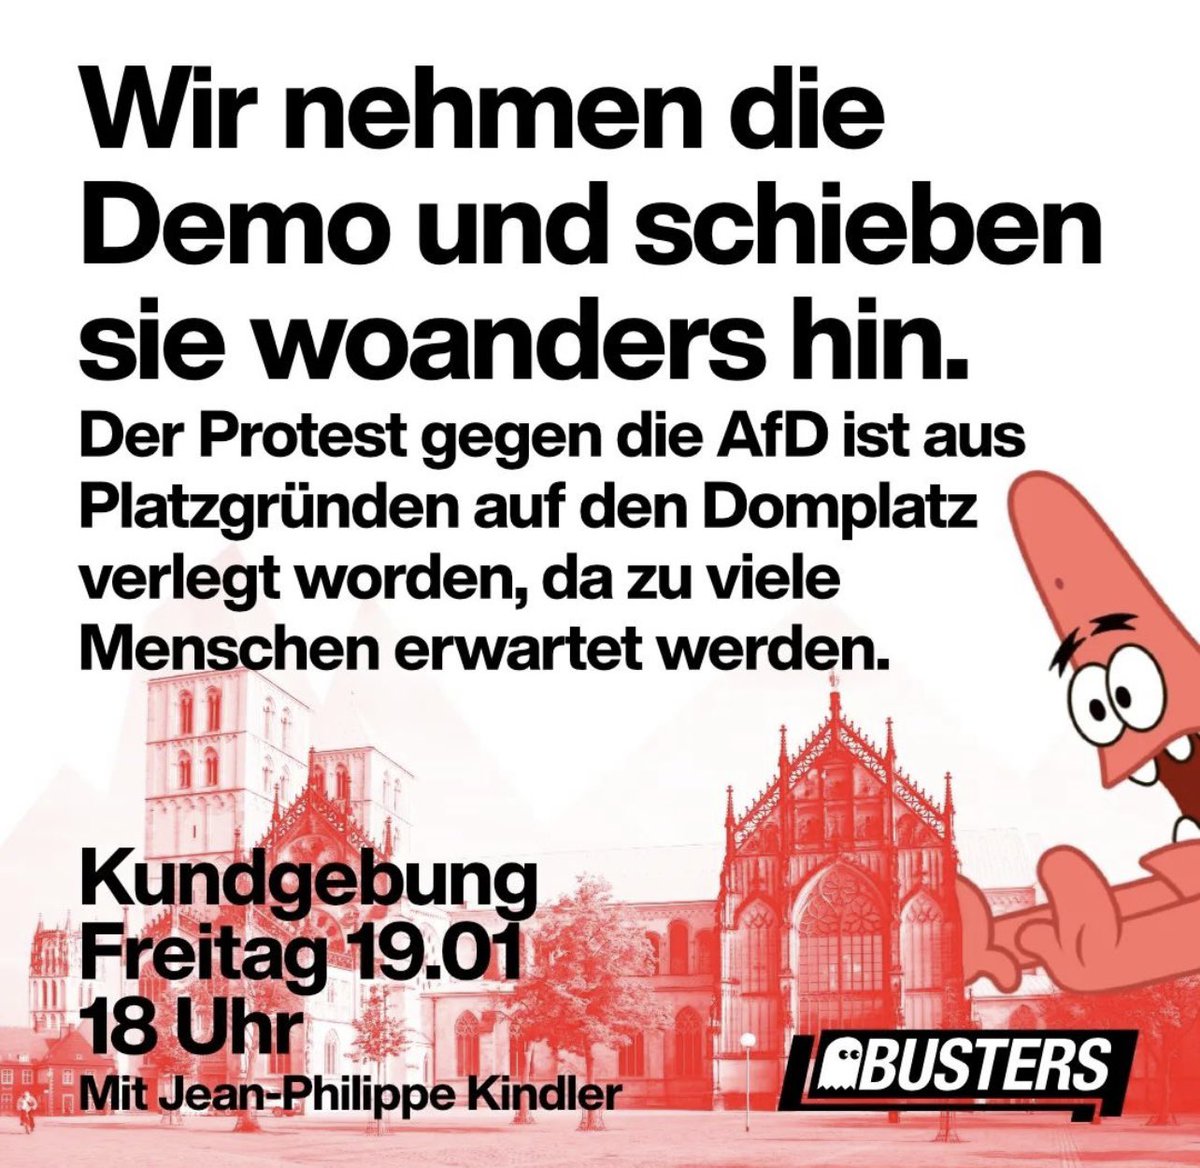 Heute um 18 Uhr auf dem Domplatz in #Münster ✊🏼❤️ #ms1901 #noafd #LAUTgegenRechts